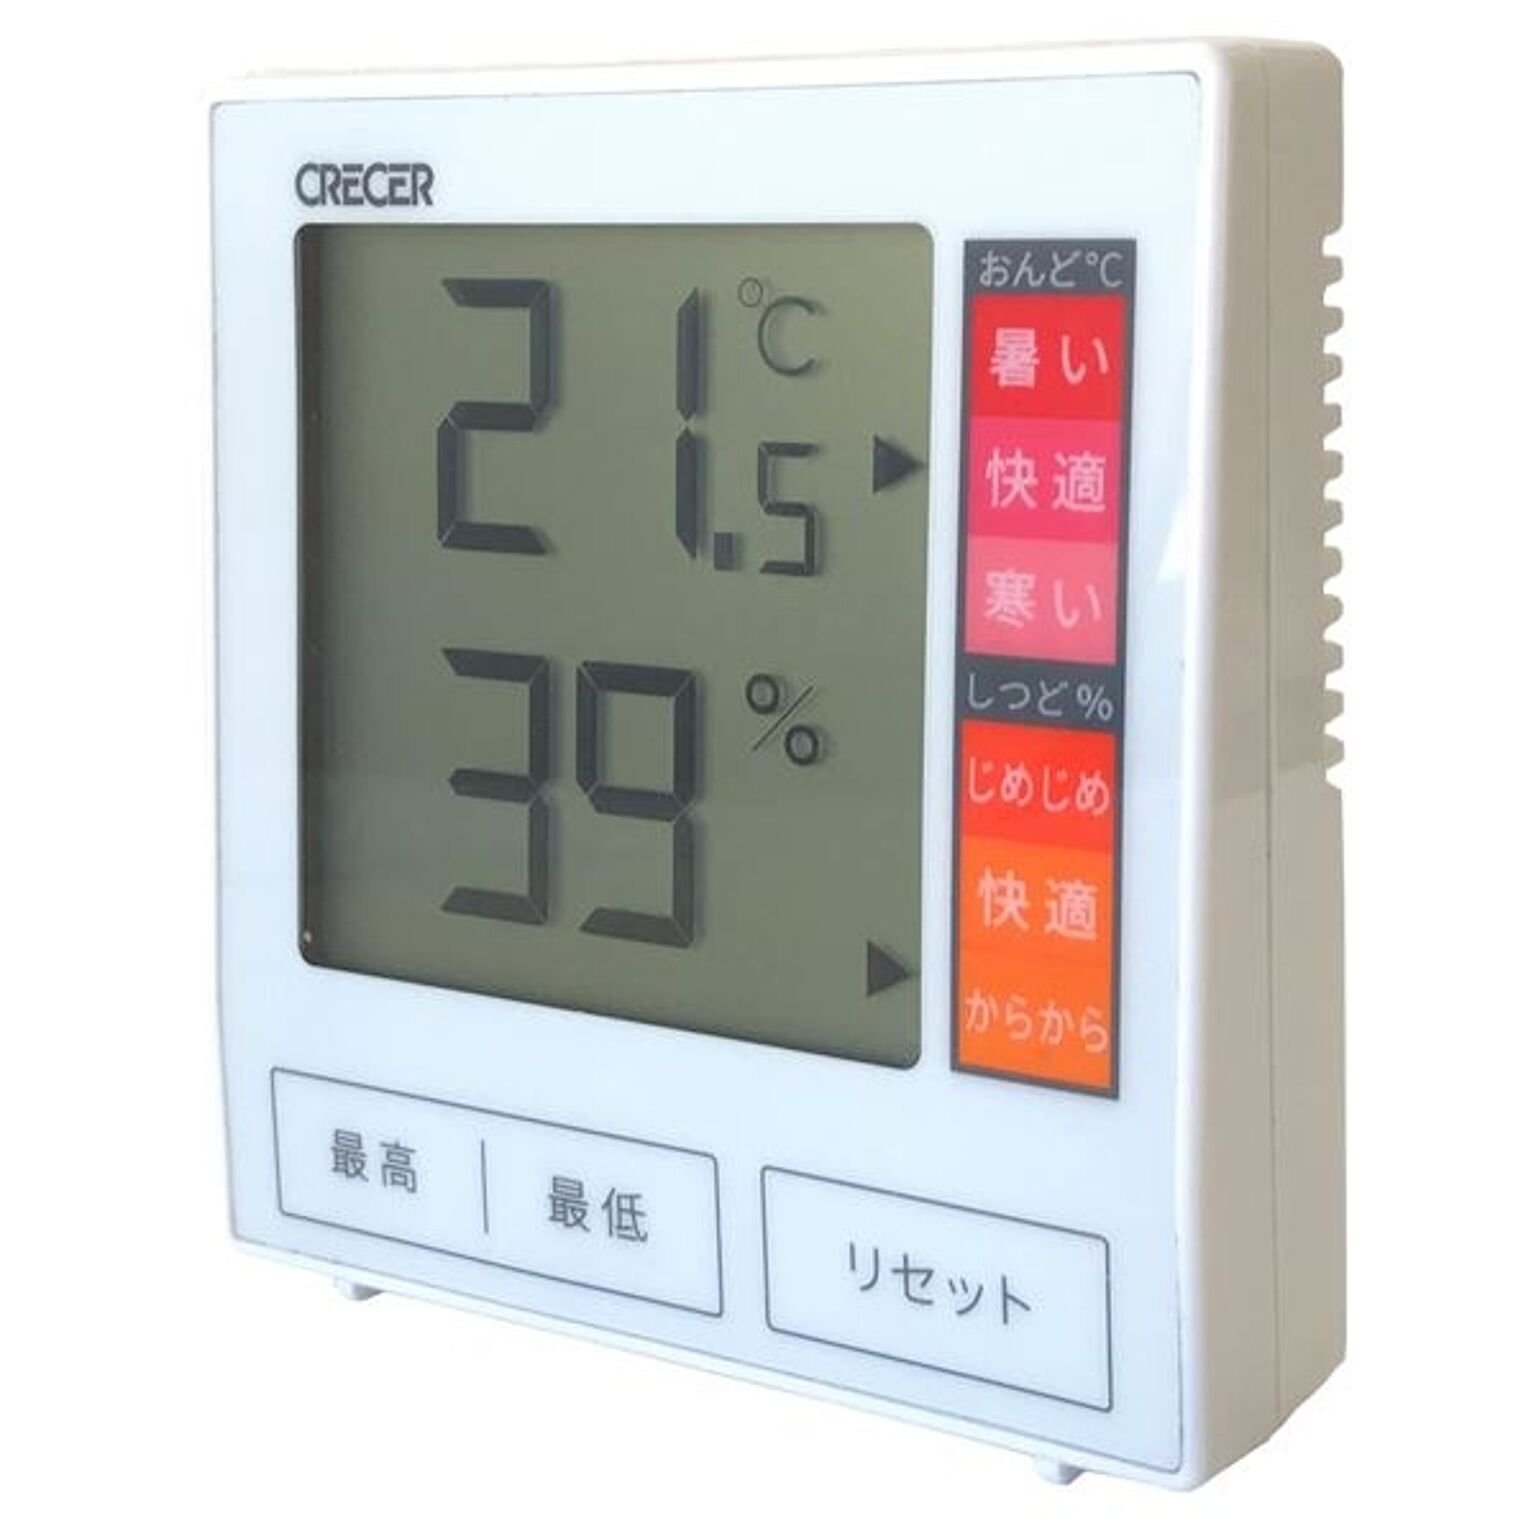 クレセル デジタル 温湿度計(最高・最低 温湿度記憶機能付き) 壁掛け・卓上用スタンド付き ホワイト CR-1180W